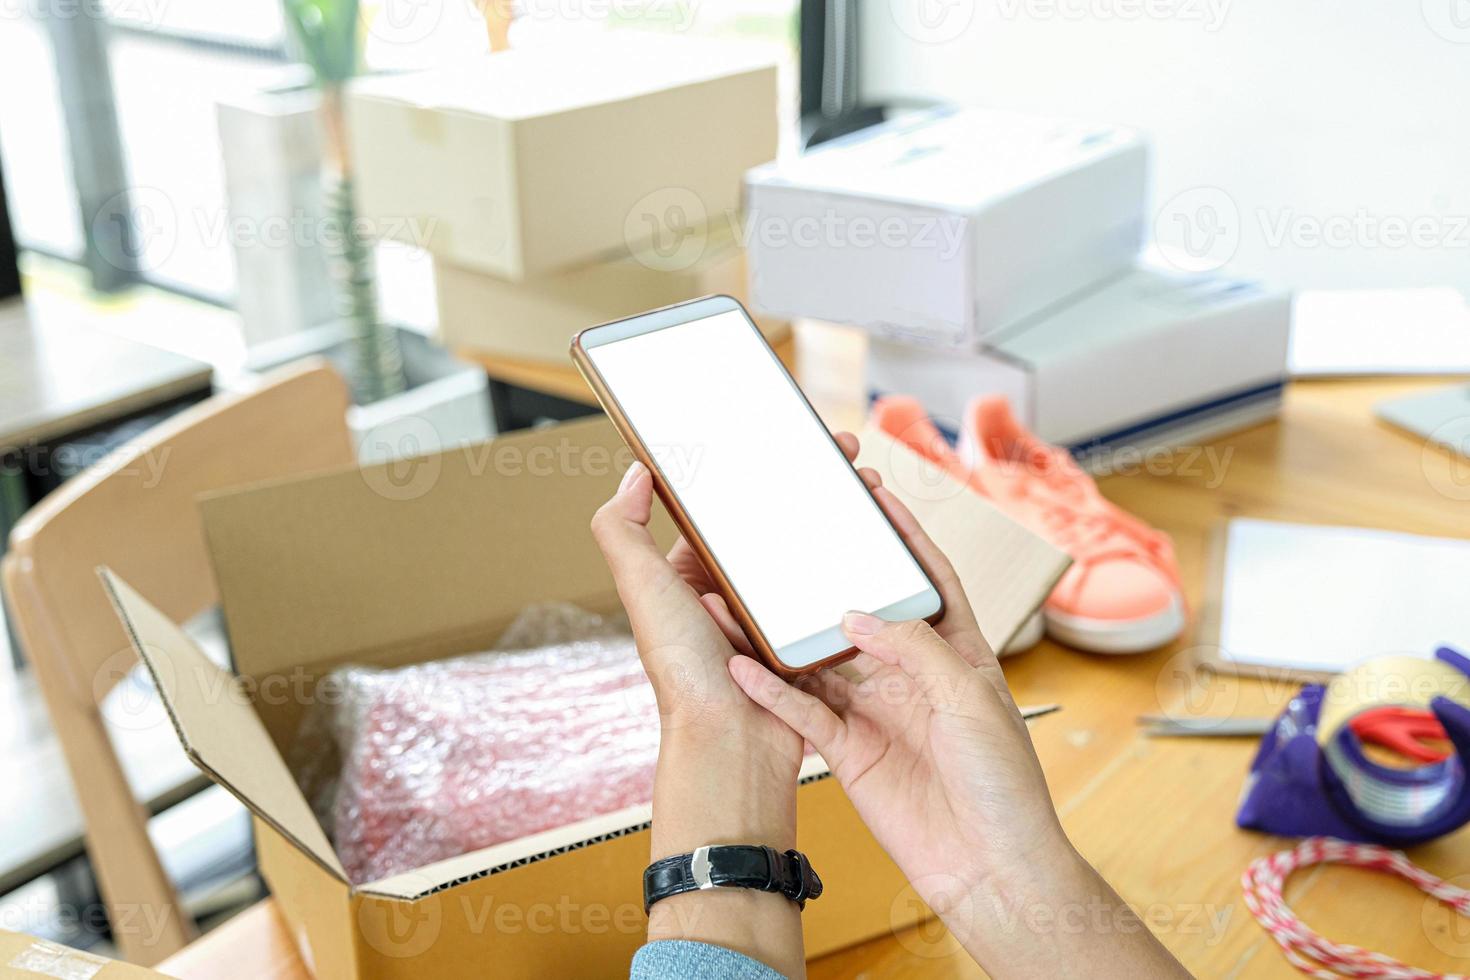 il venditore online usa il telefono cellulare per scattare foto dei prodotti nella scatola da inviare al cliente.